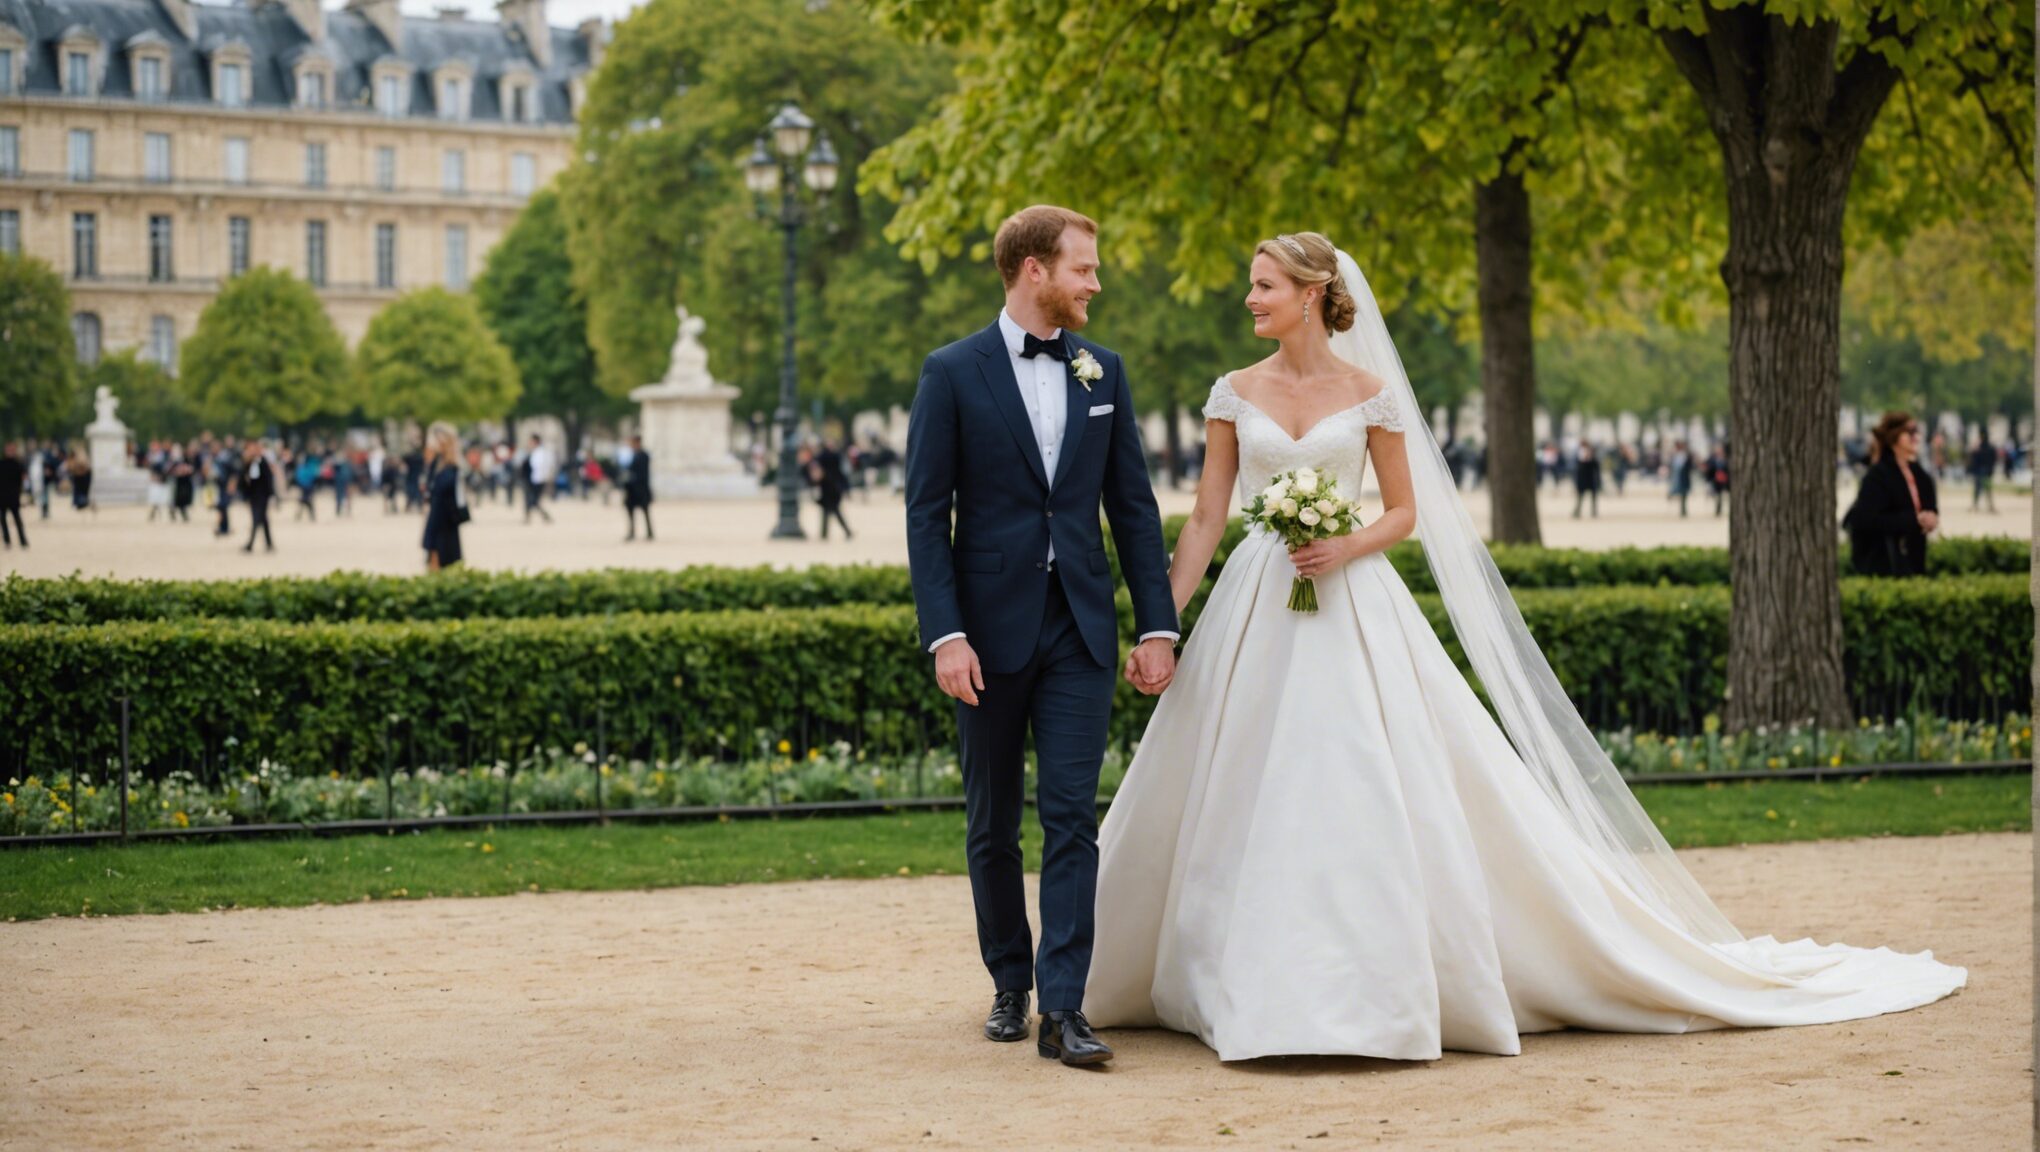 découvrez le jardin des tuileries, un endroit romantique emblématique de paris pour une demande en mariage inoubliable.